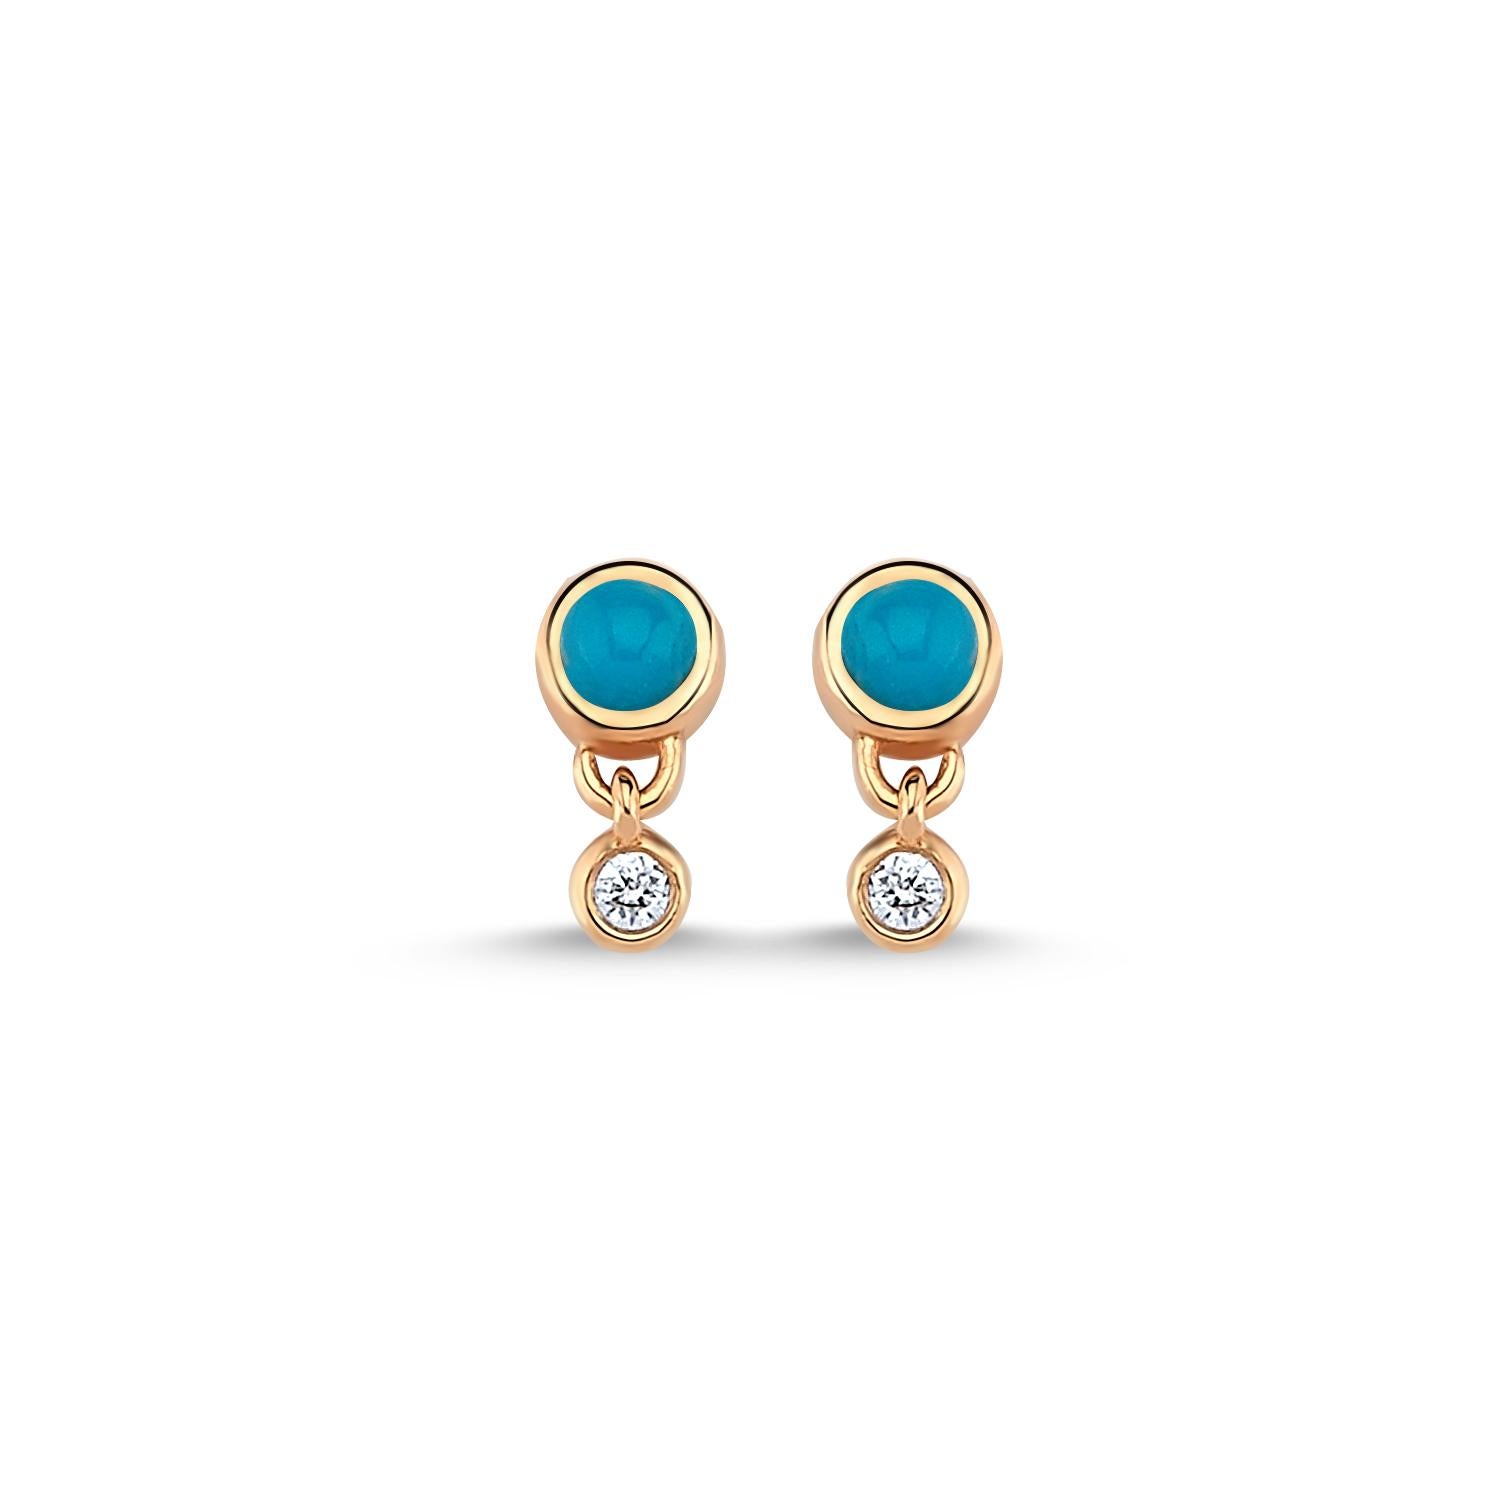 Boucle d'oreille Rhea en turquoise (simple) en or rose 14k par Selda Jewellery

Informations complémentaires:-
Collection : Collection 